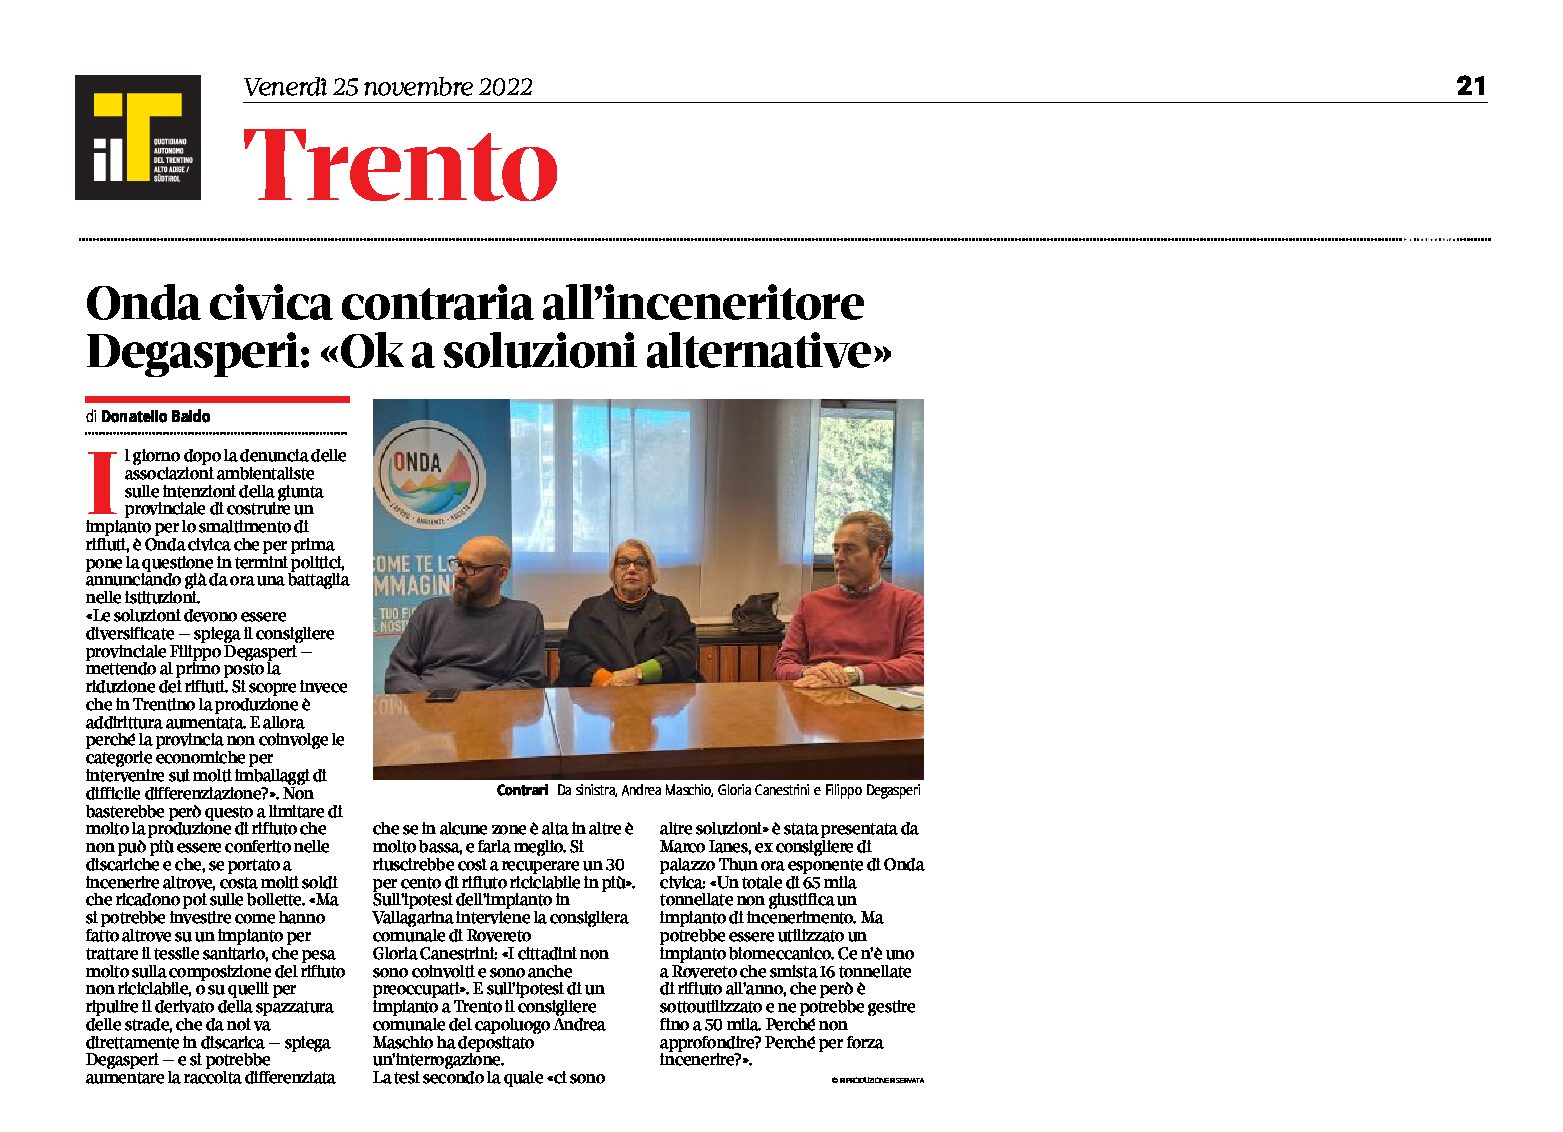 Trento, inceneritore: Onda civica contraria. Degasperi ok a soluzioni alternative